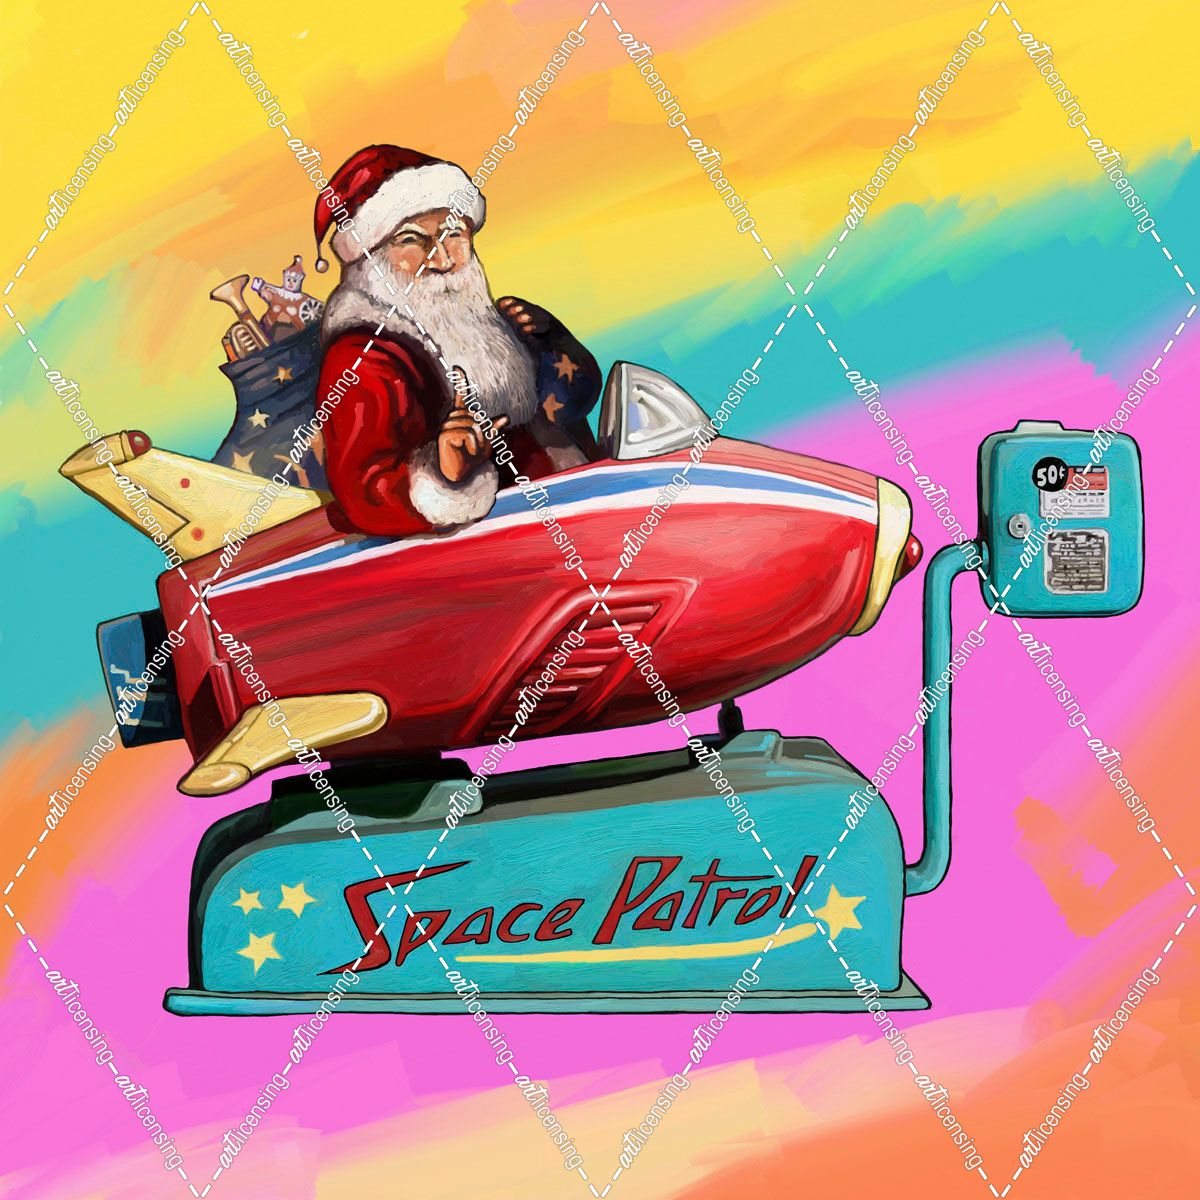 Santa Space Partol Kiddie Rocket